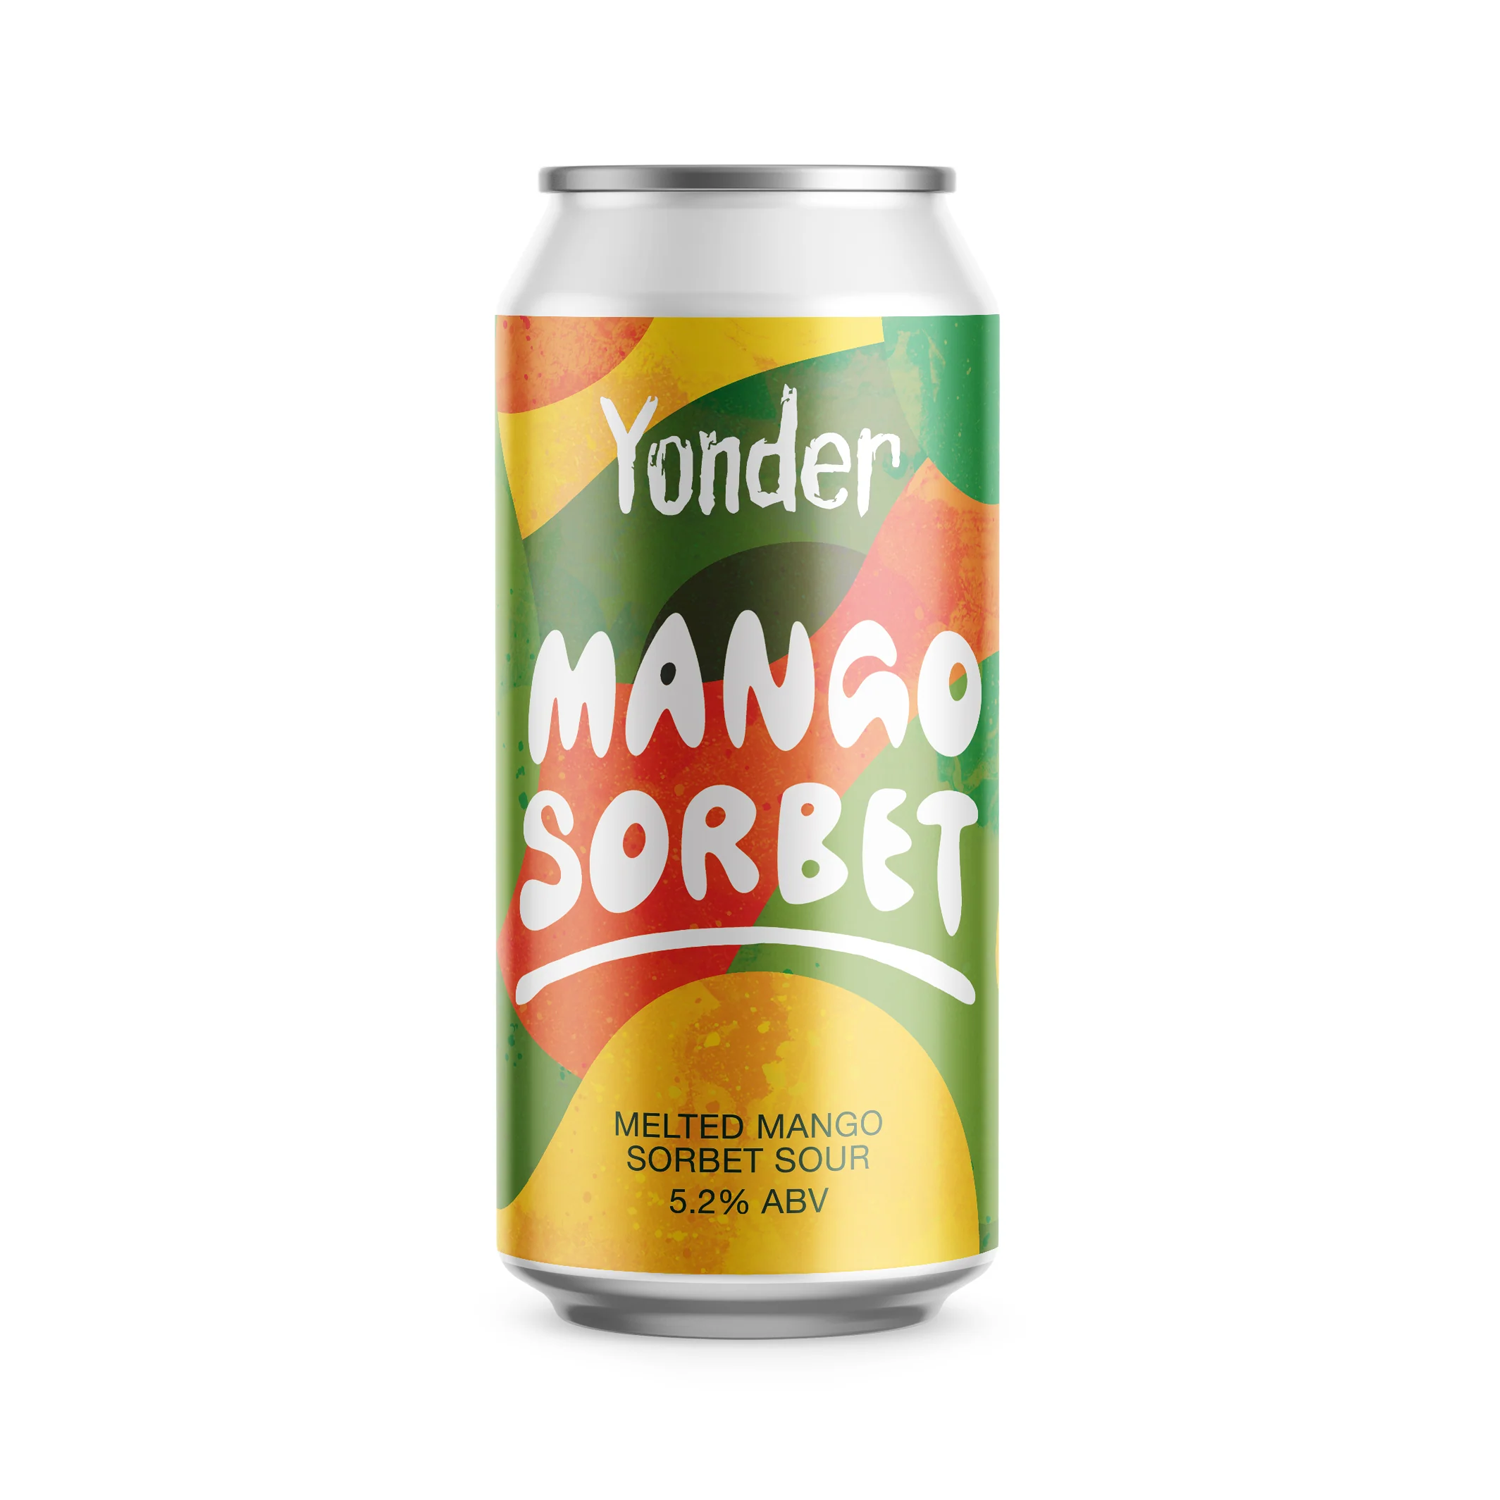 Yonder Mango Sorbet Melted Mango Sorbet Sour